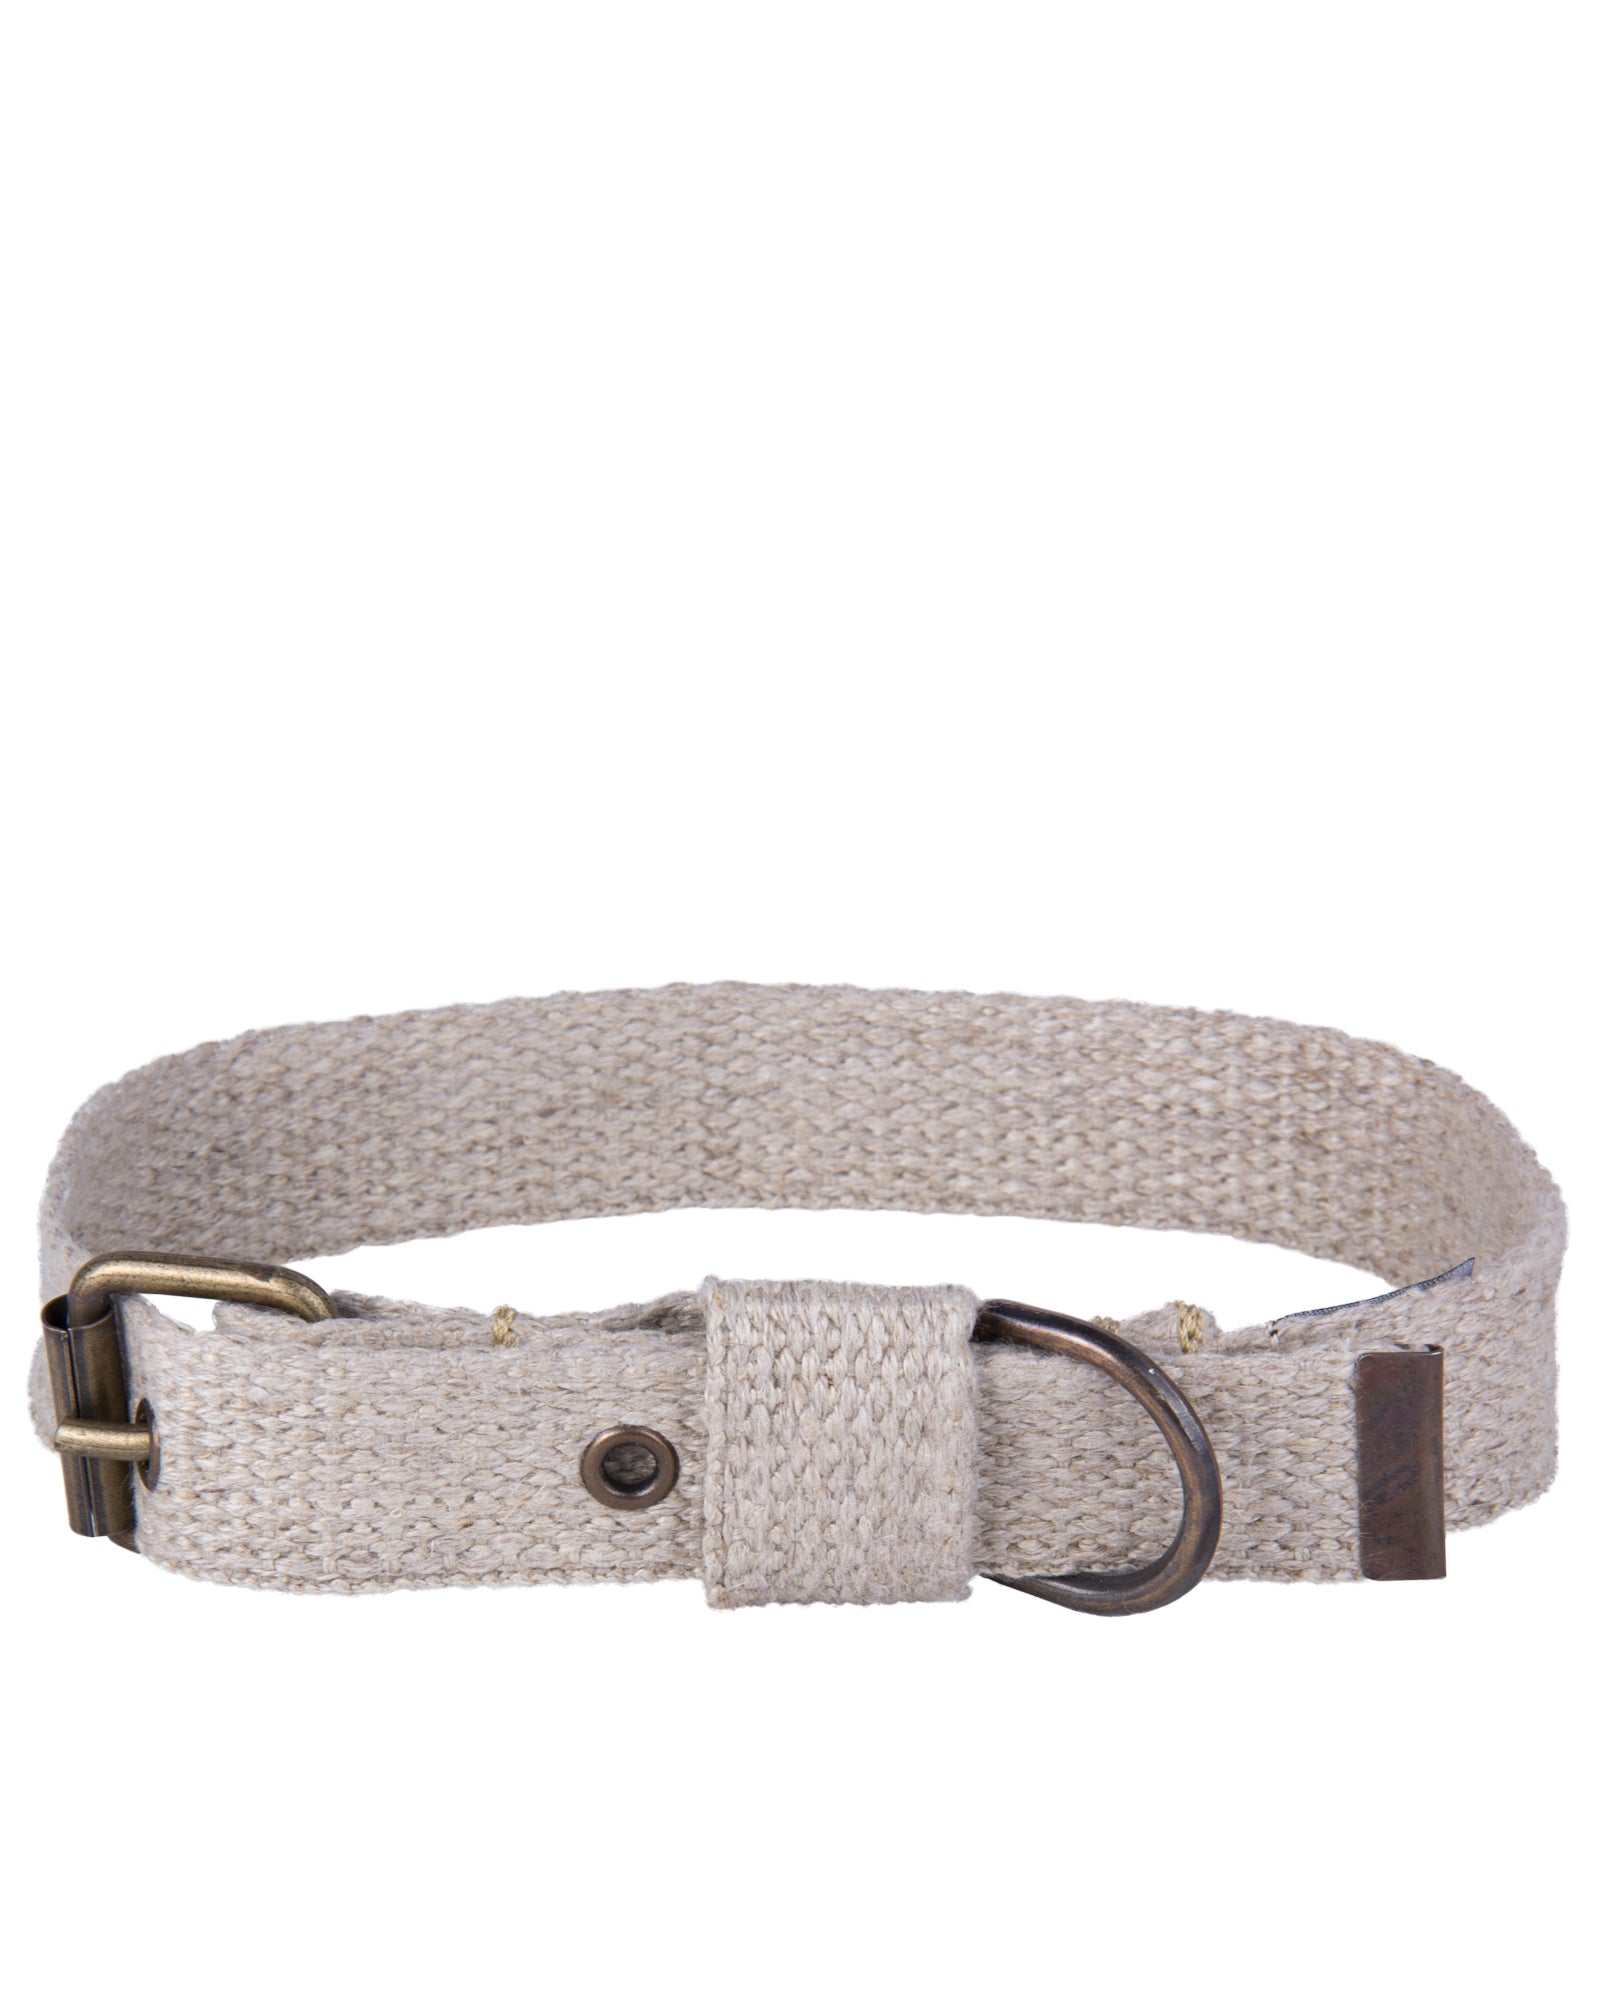 Herringbone Premium Leather Bracelet, Accessories